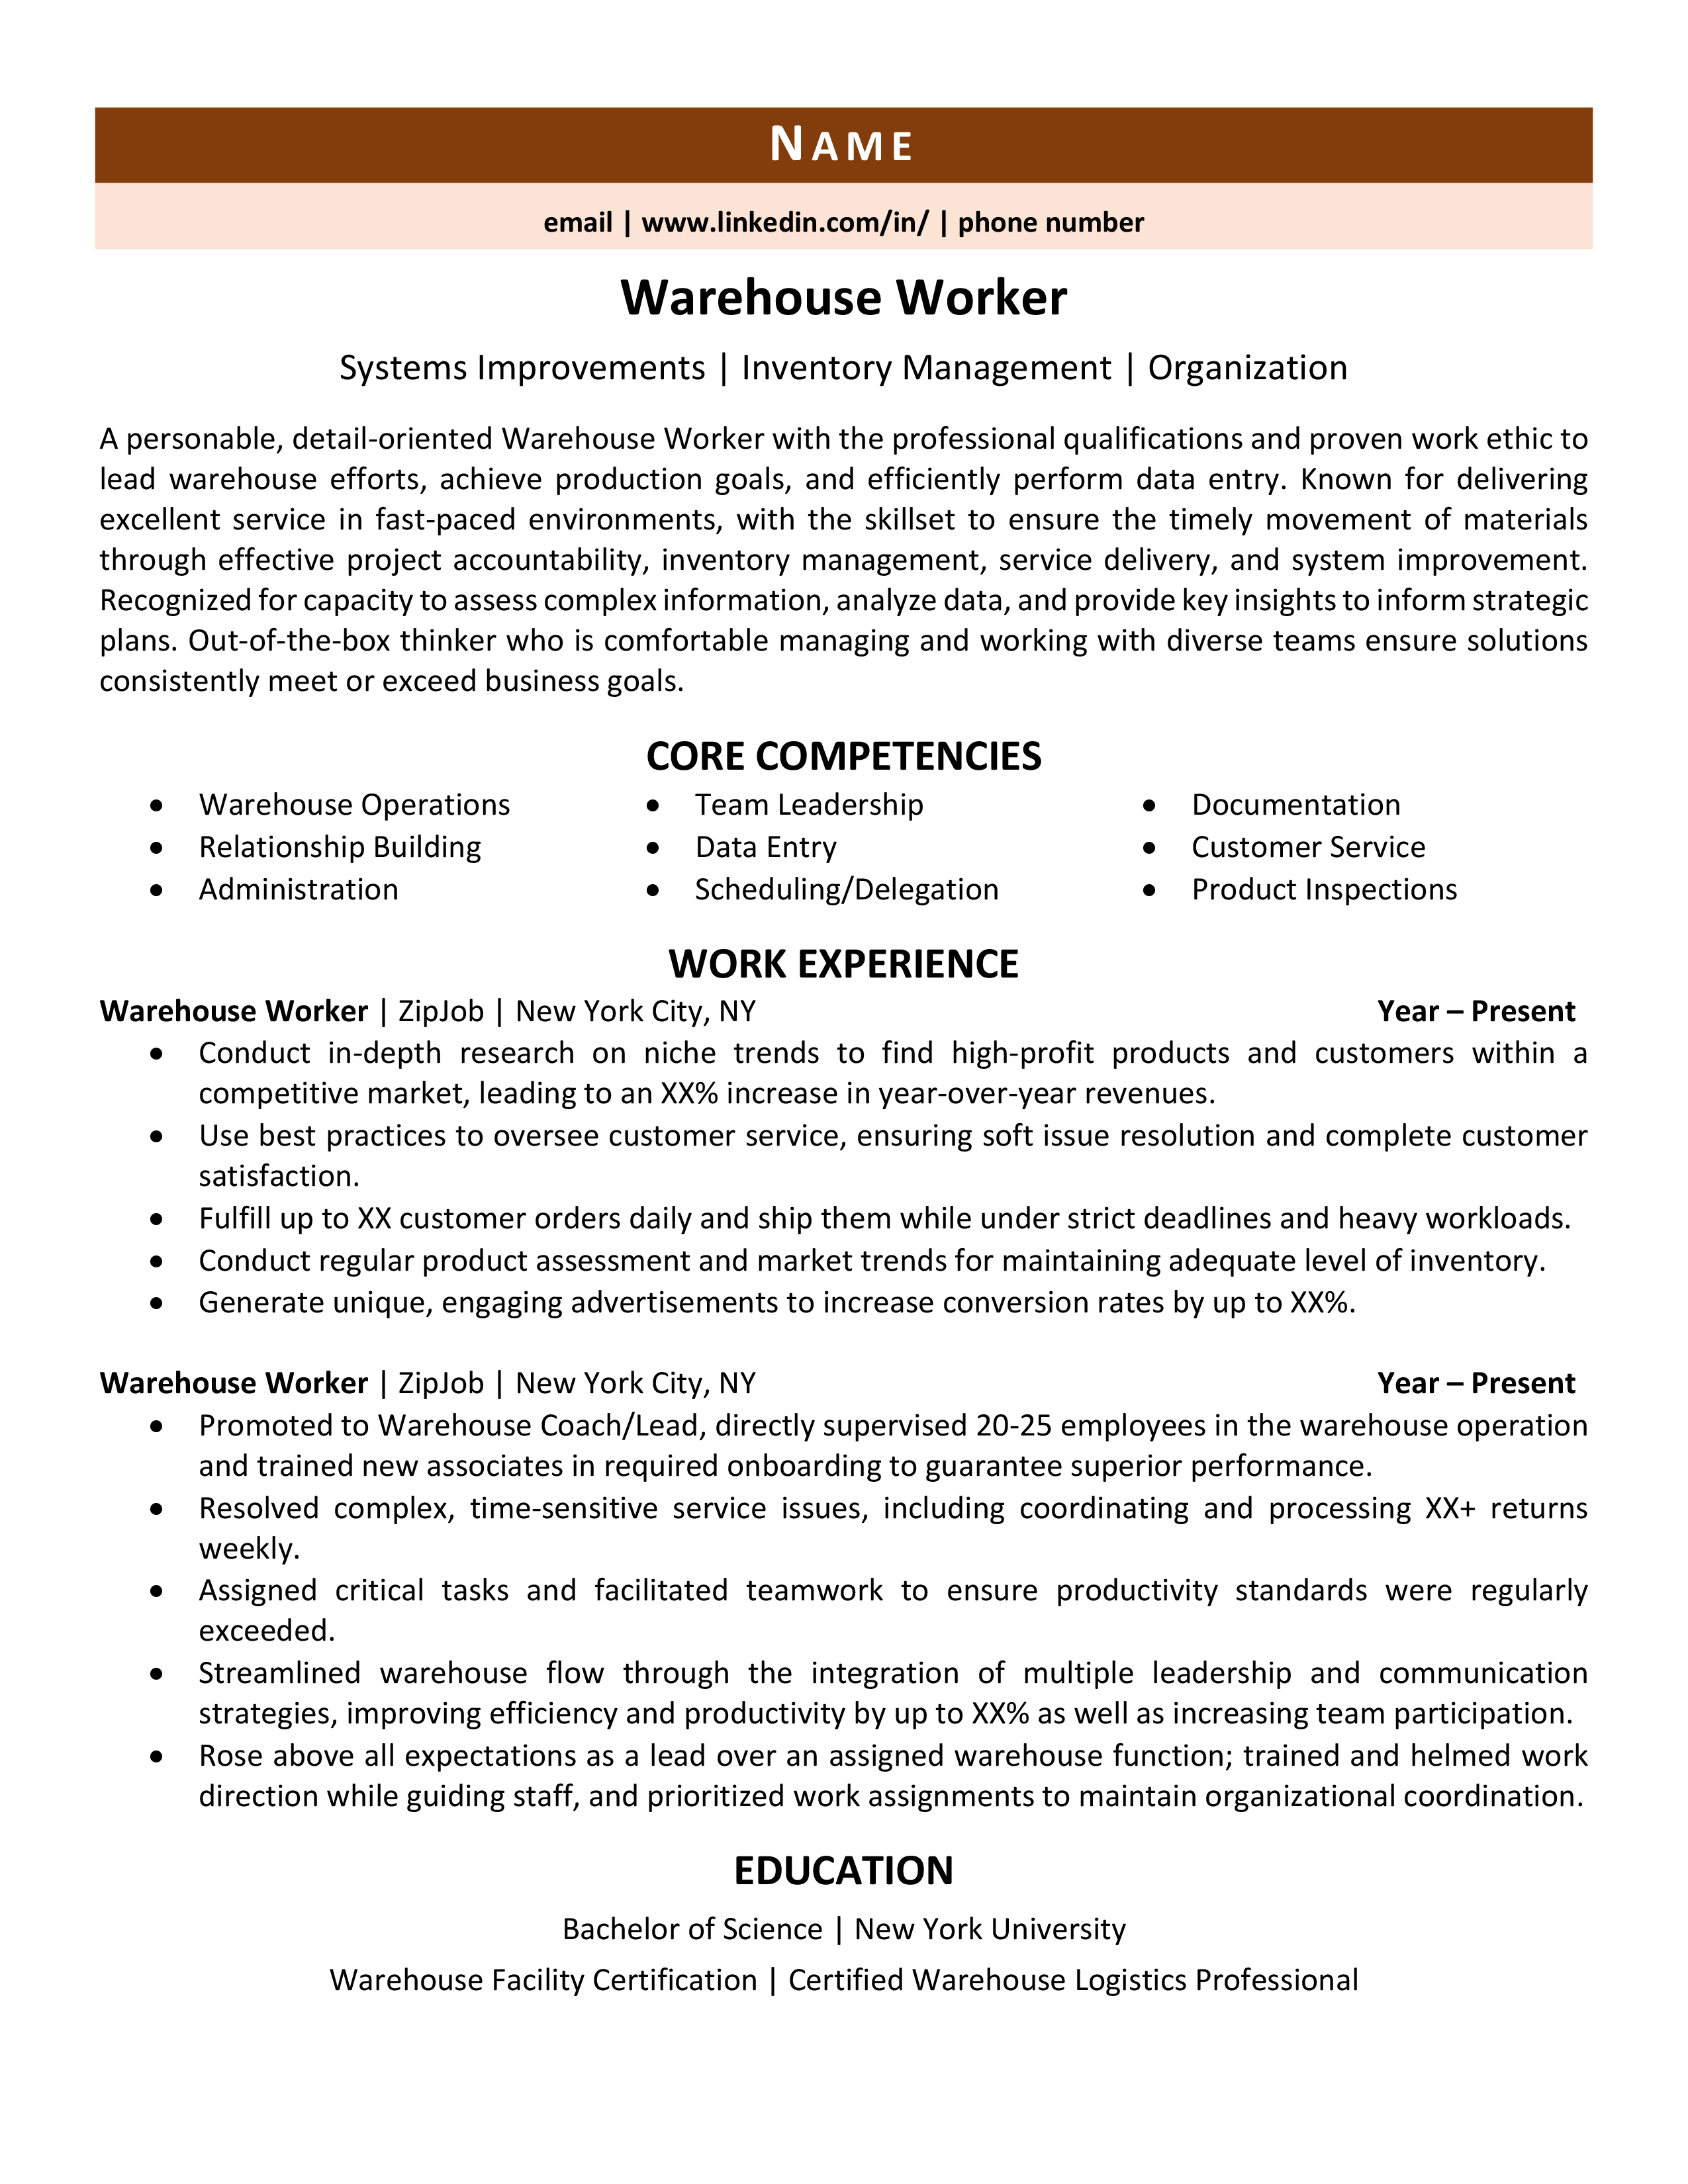 resume skills list for warehouse worker